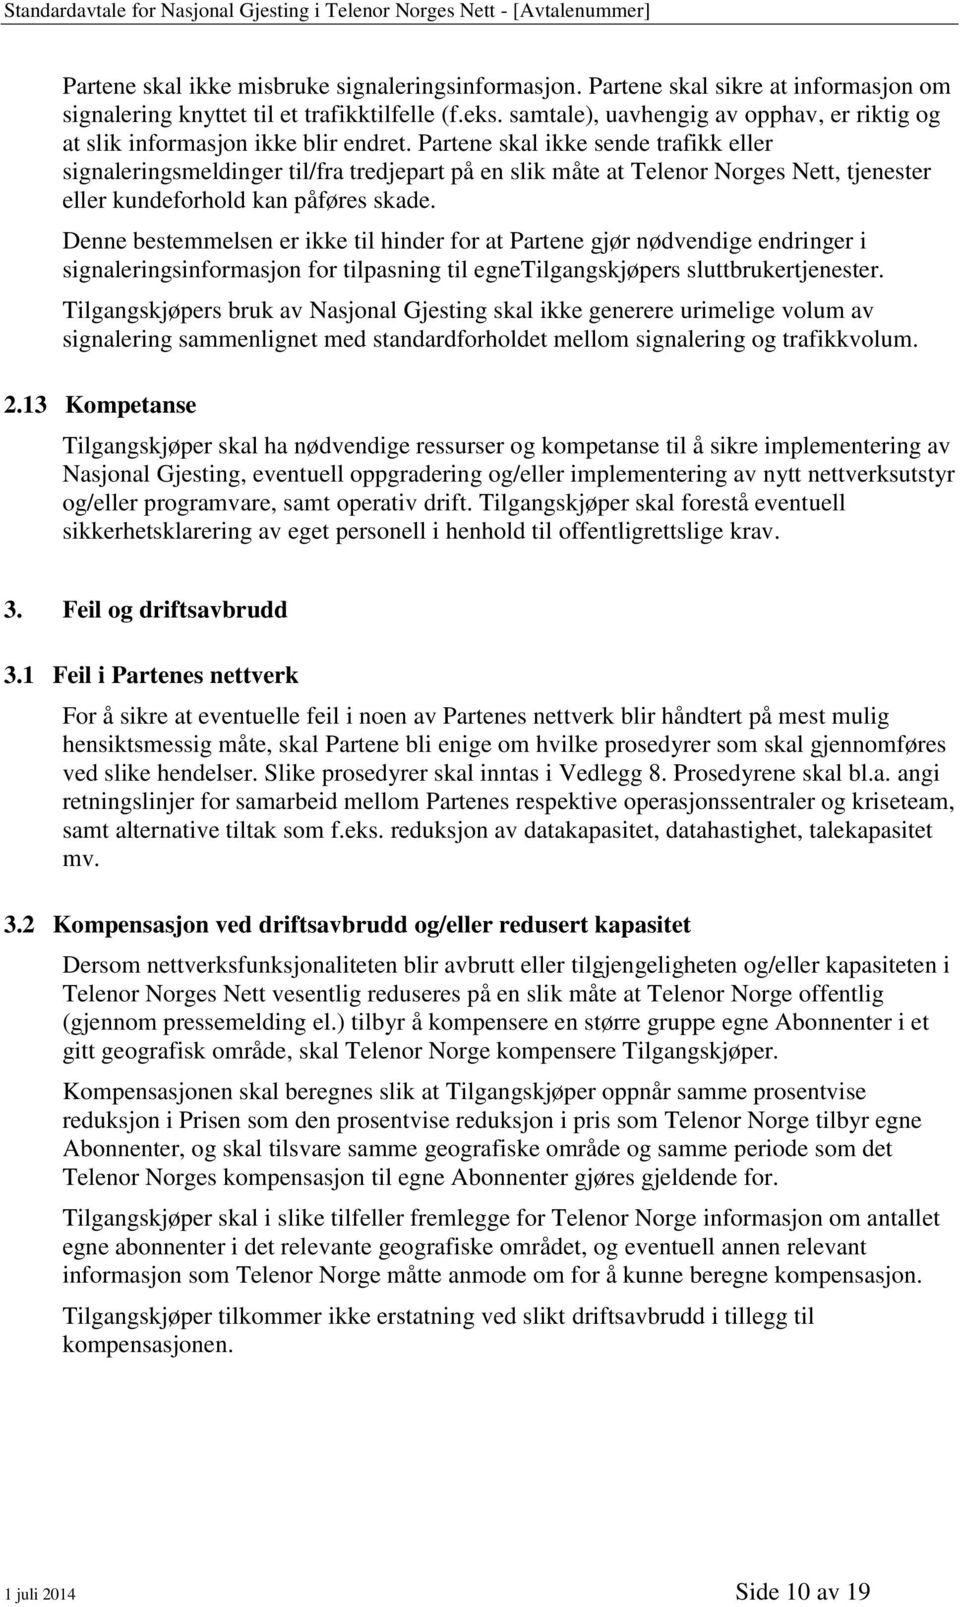 Partene skal ikke sende trafikk eller signaleringsmeldinger til/fra tredjepart på en slik måte at Telenor Norges Nett, tjenester eller kundeforhold kan påføres skade.